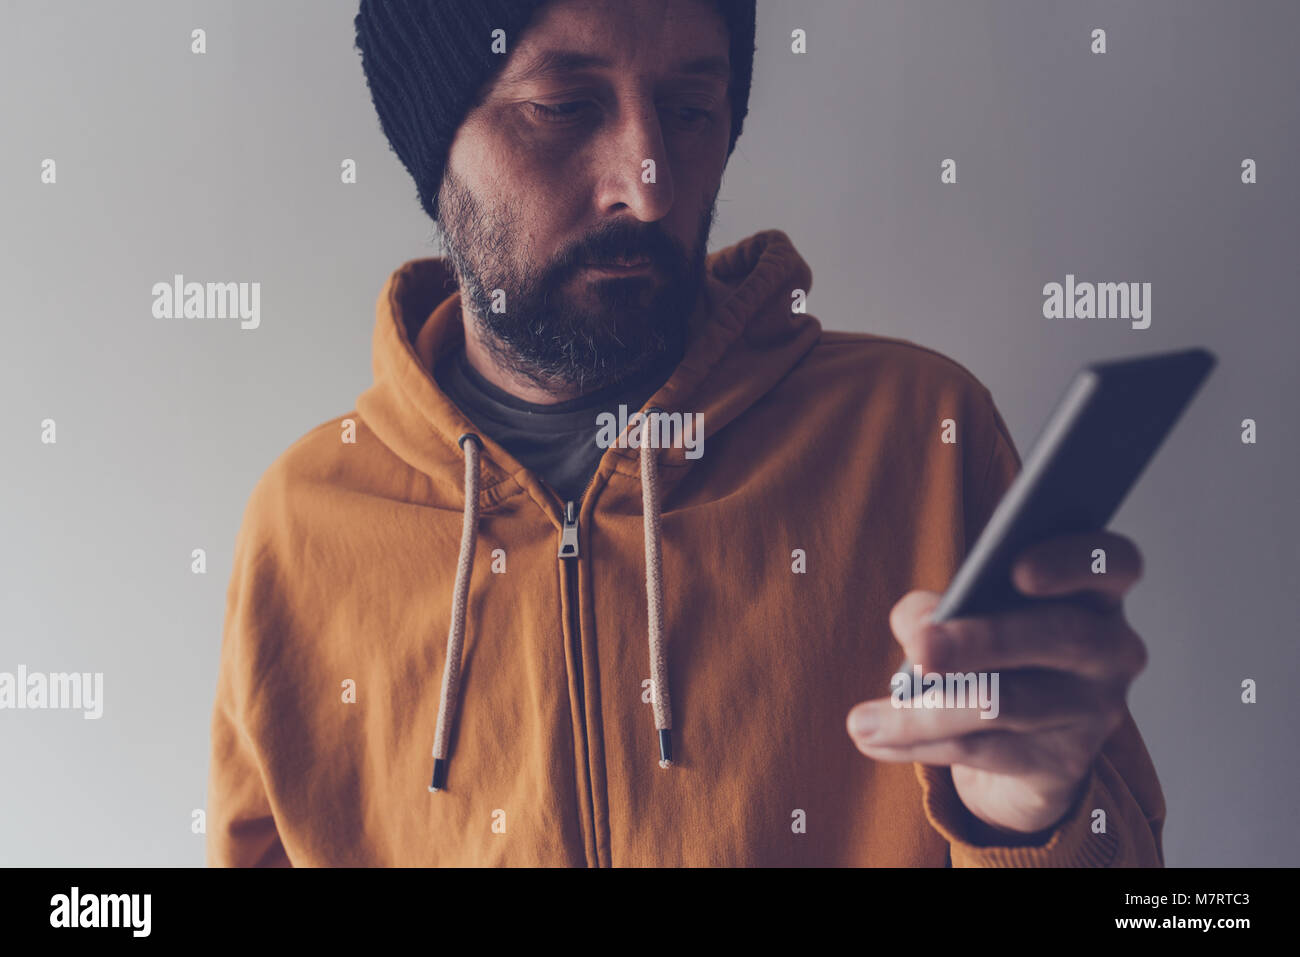 Casual erwachsenen Mann mit Kappe und gelben T-Shirt am Handy suchen, Low Key Kommunikation und Lifestyle Portrait mit selektiven Fokus Stockfoto